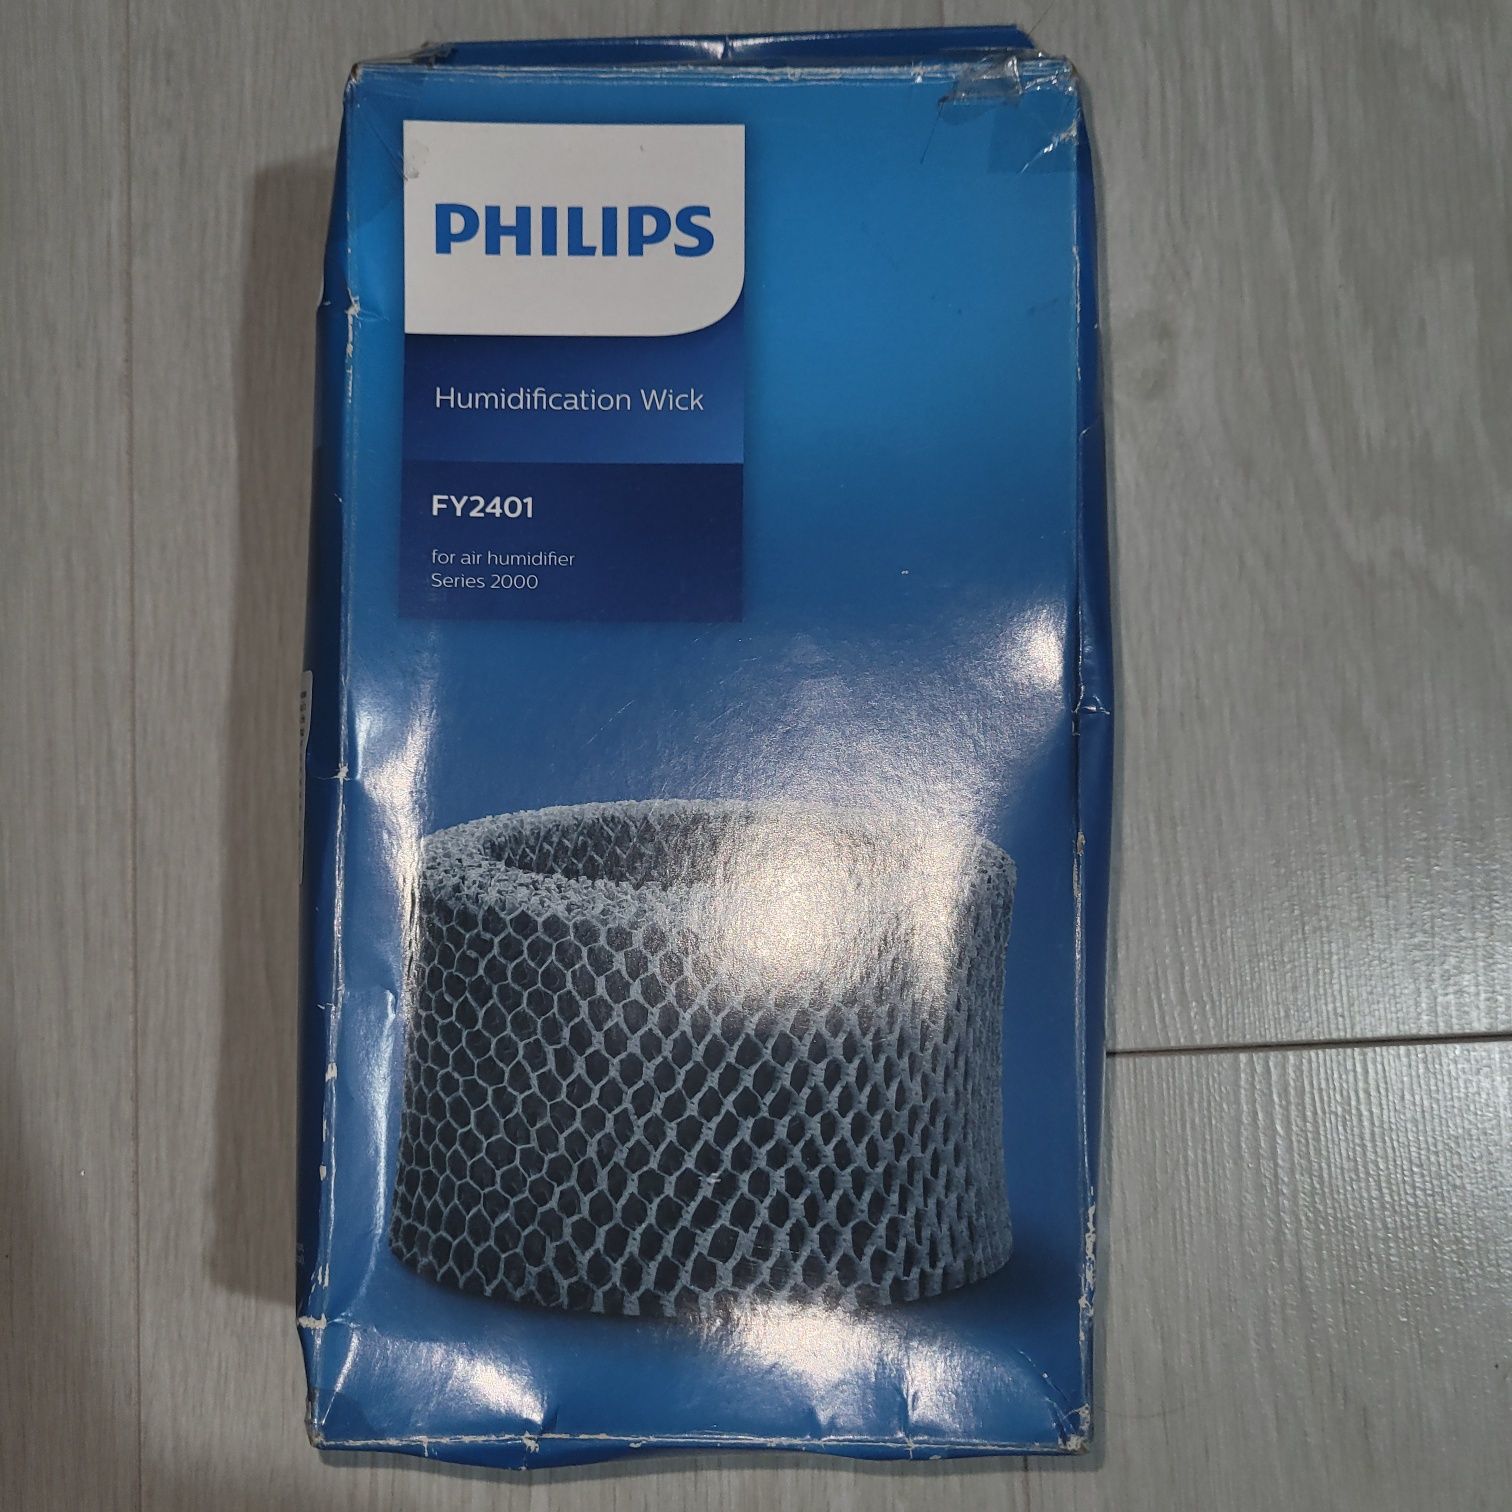 Зволожувач повітря Philips